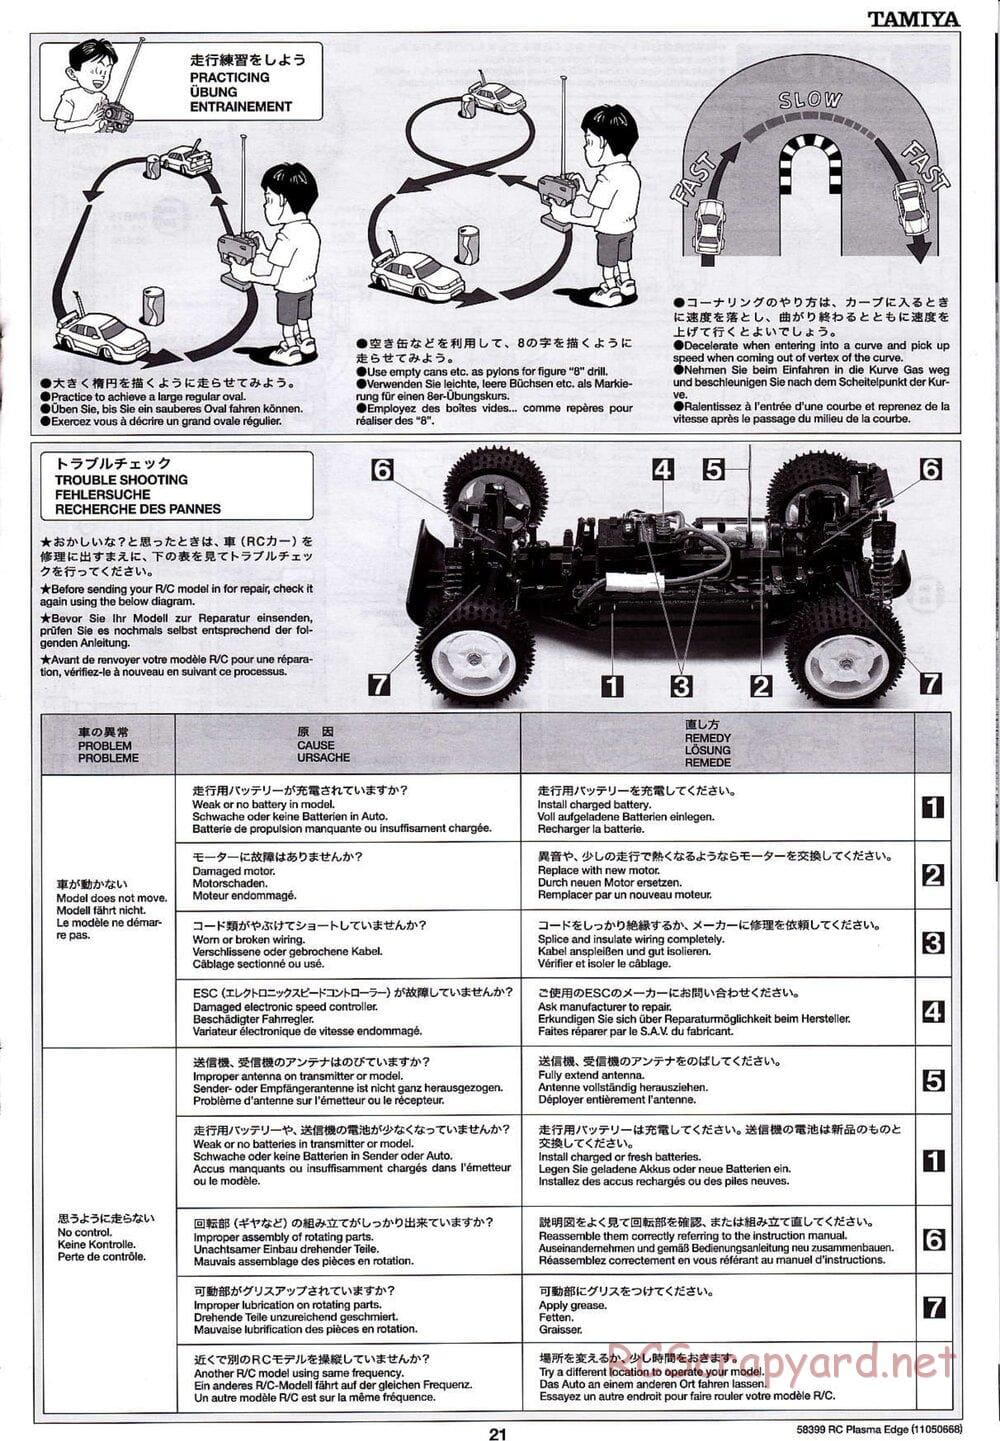 Tamiya - Plasma Edge Chassis - Manual - Page 21